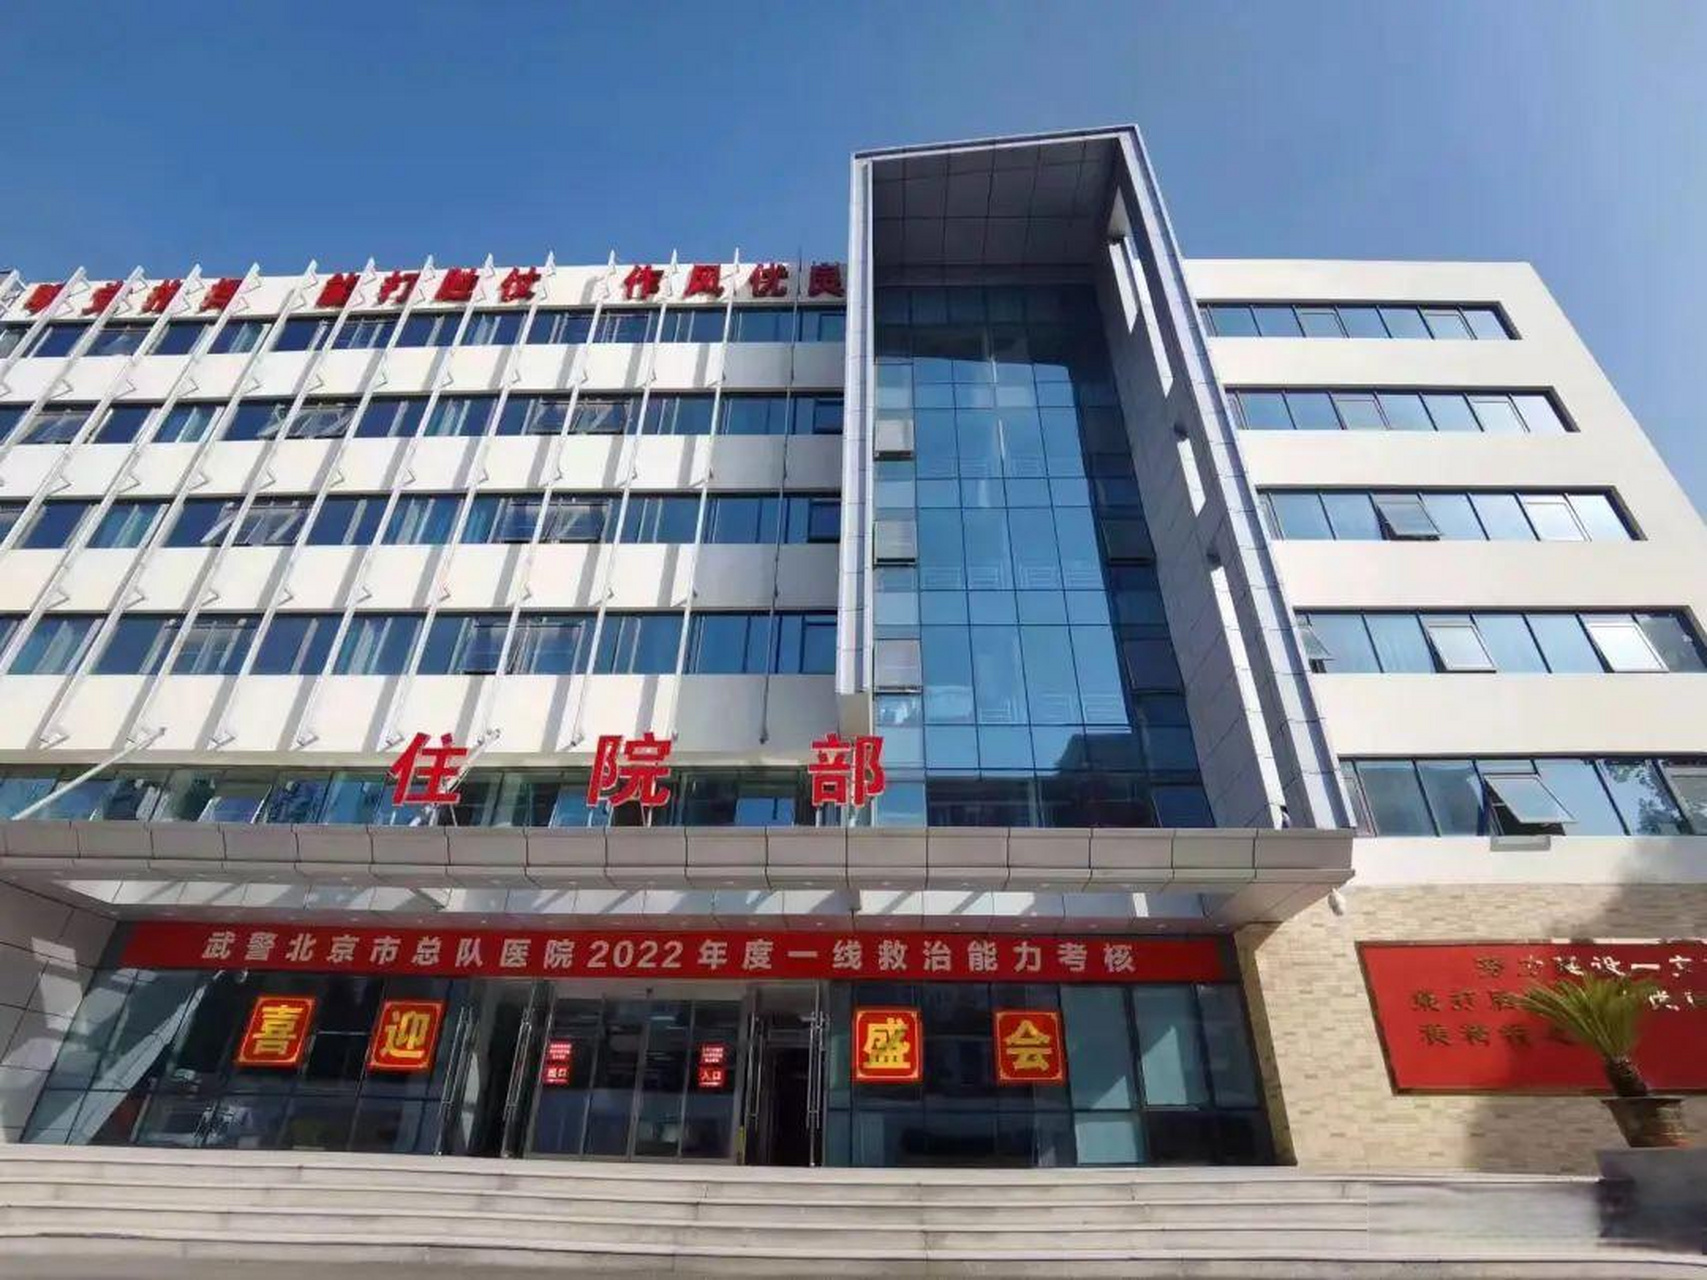 武警北京市总队医院是一所三级甲等医院,成立于1949年8月